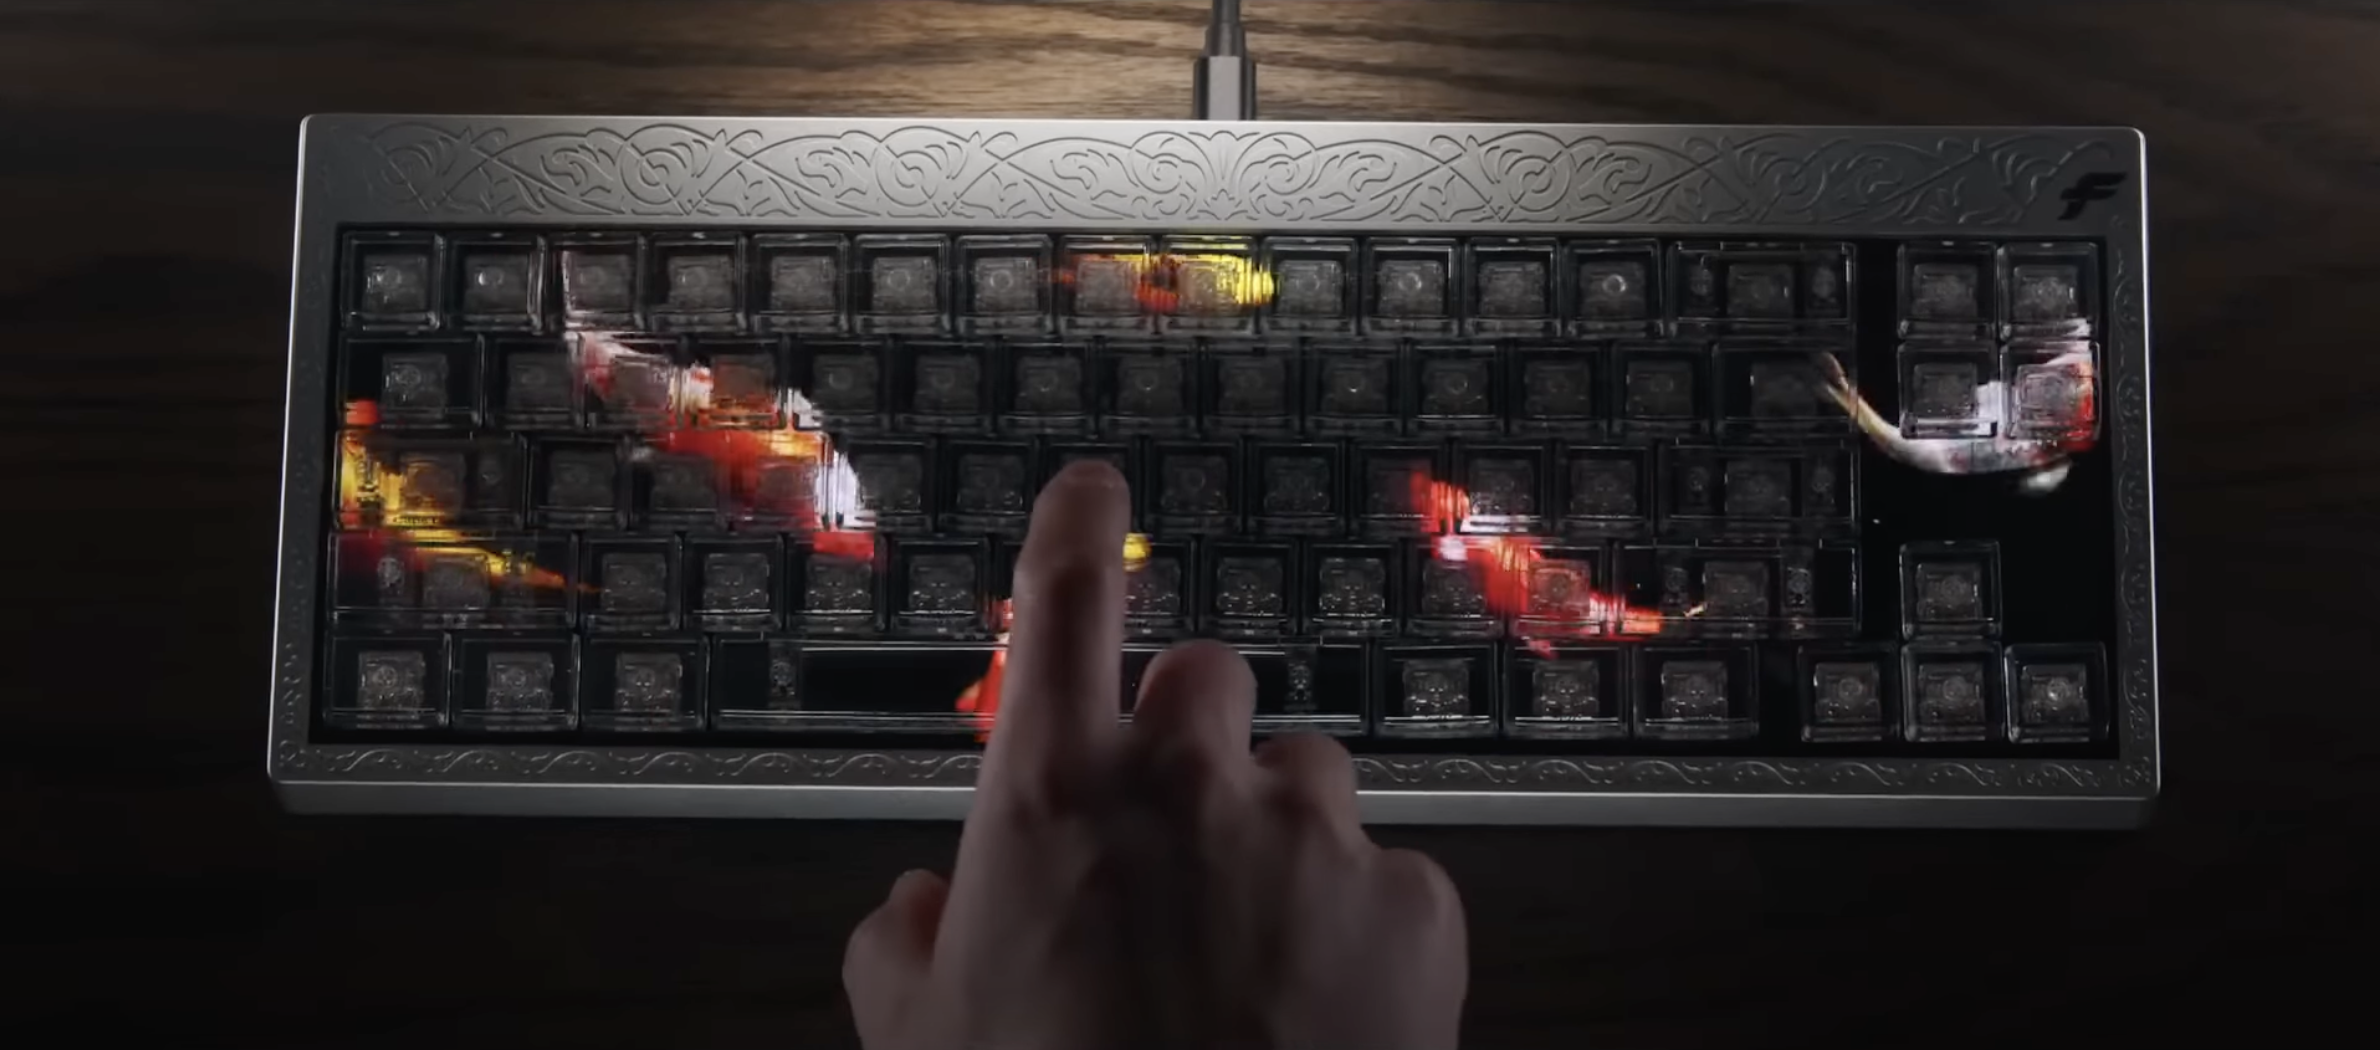 ⌨️ Компанія Finalmouse презентувала клавіатуру для ПК з екраном під клавішами 